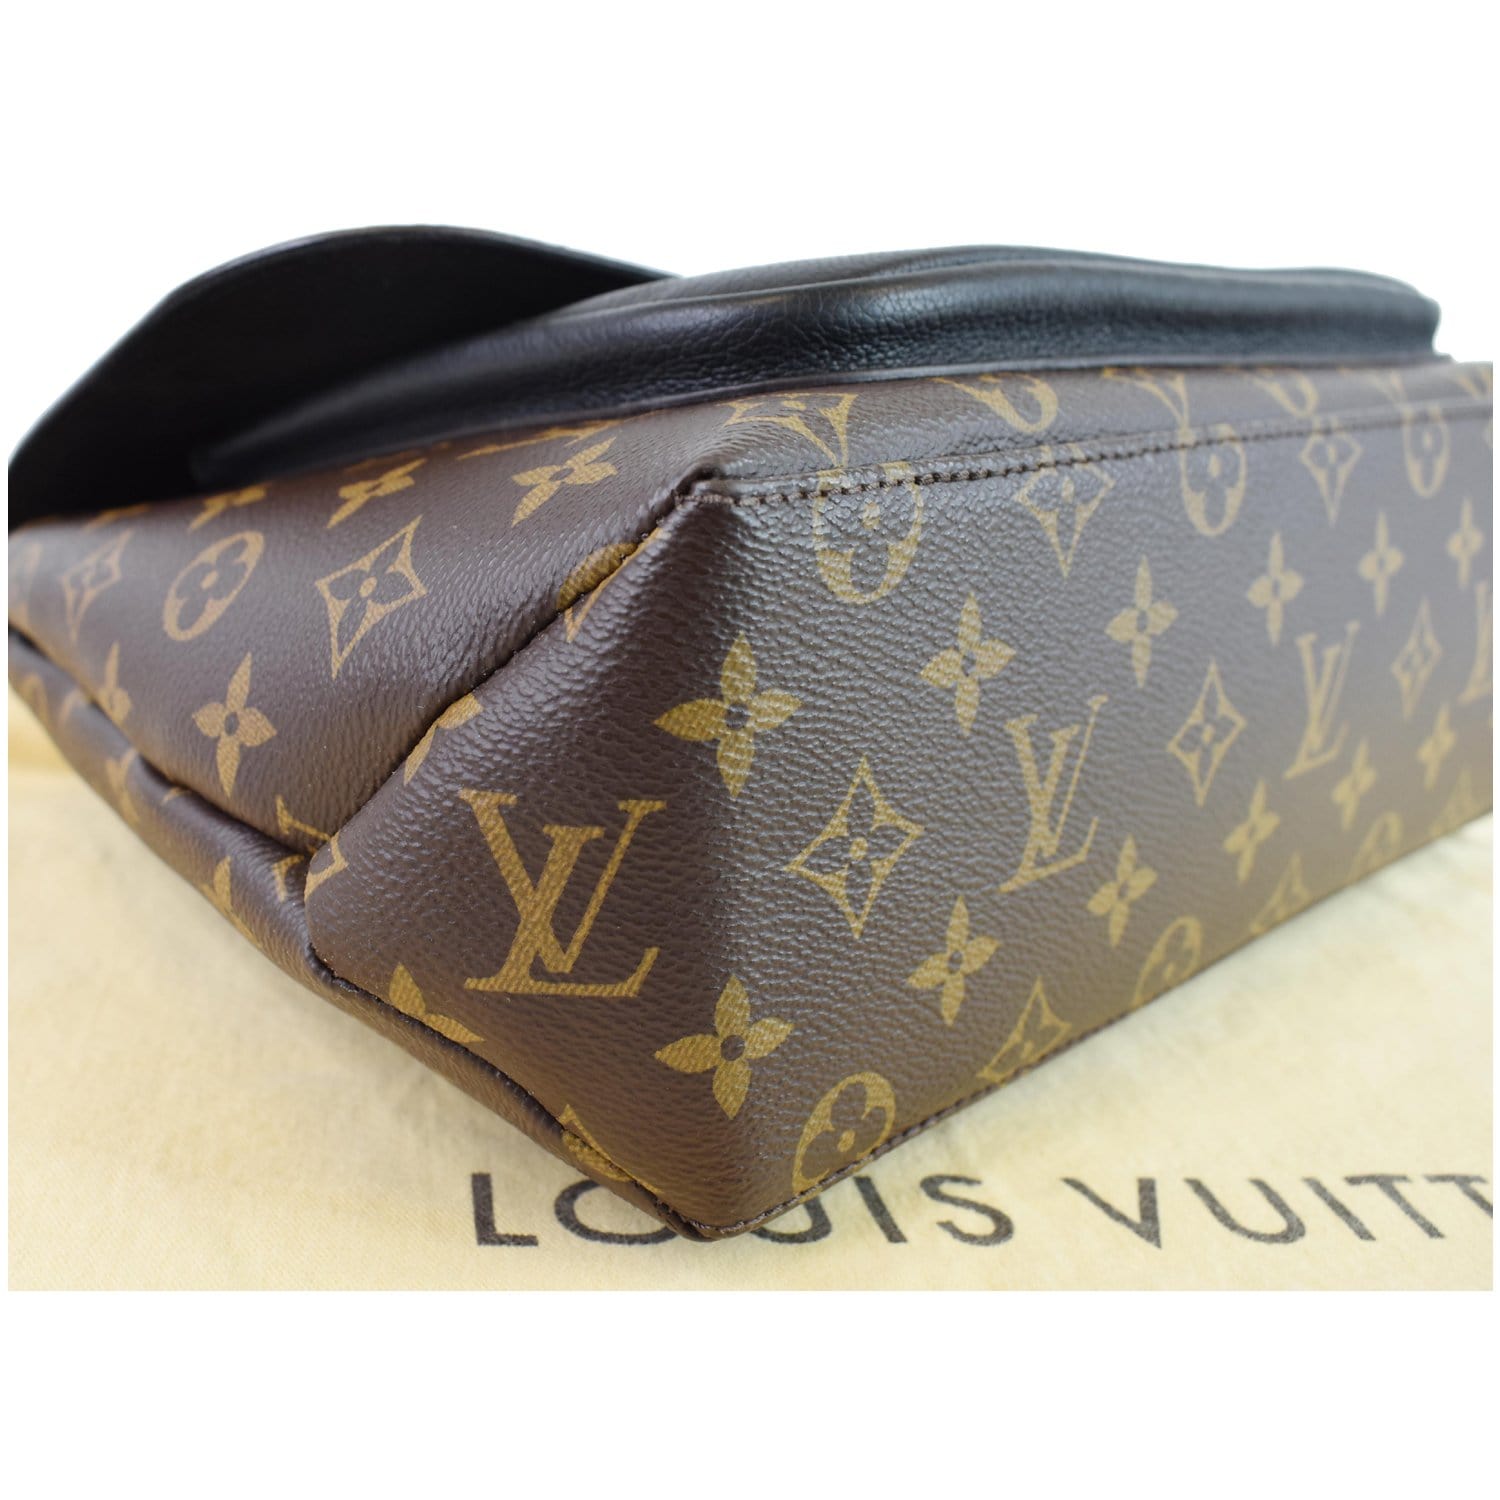 Louis Vuitton 2018 pre-owned Marignan two-way Handbag - Farfetch